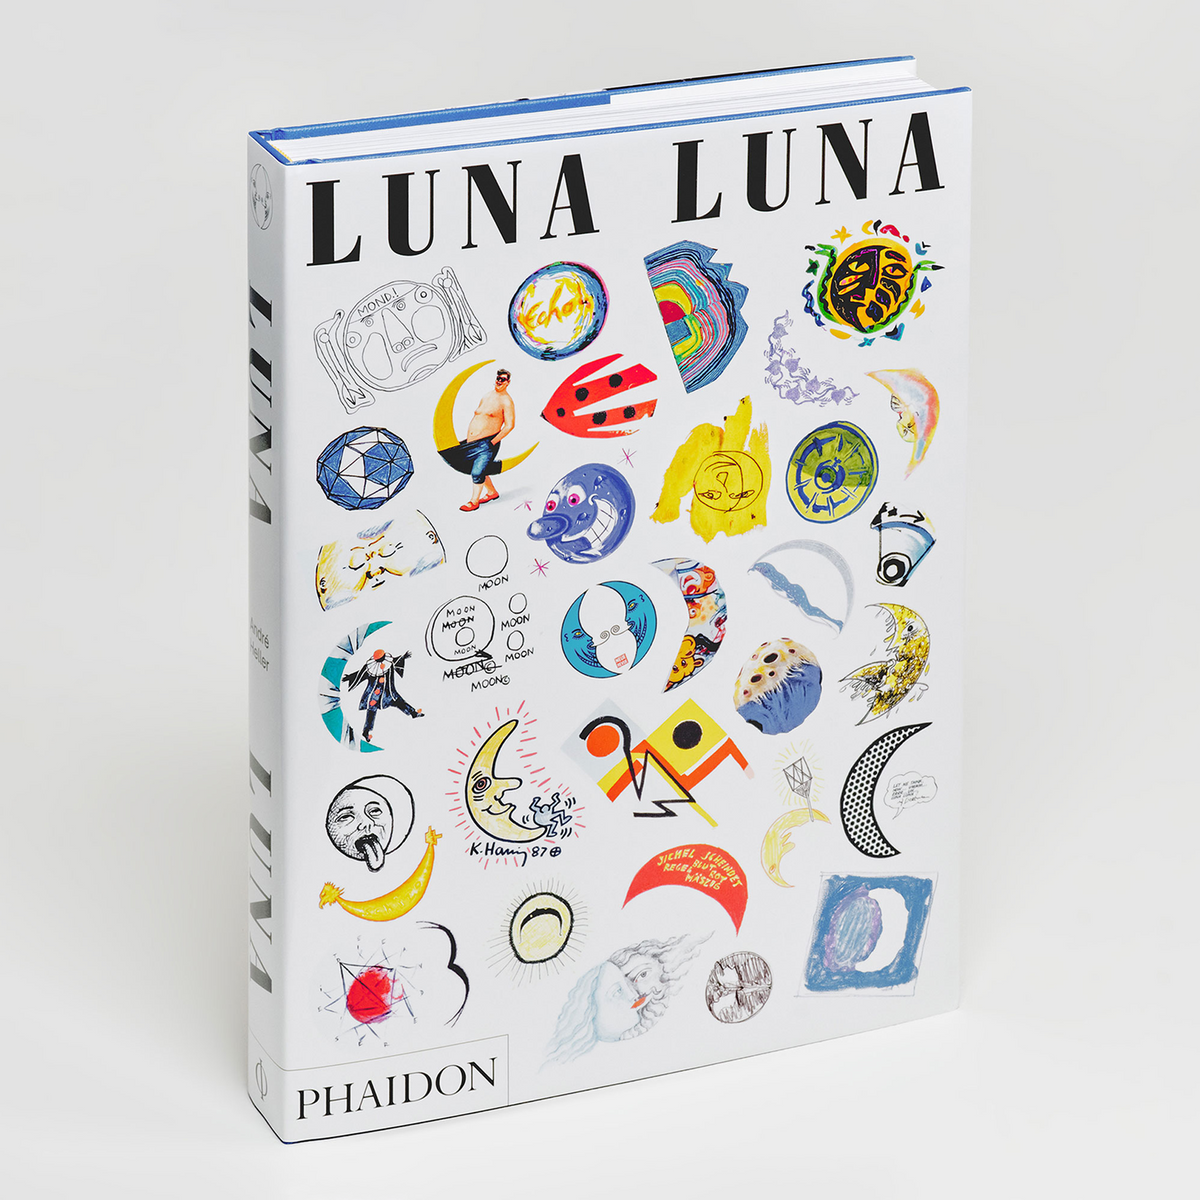 Luna Luna by André Heller